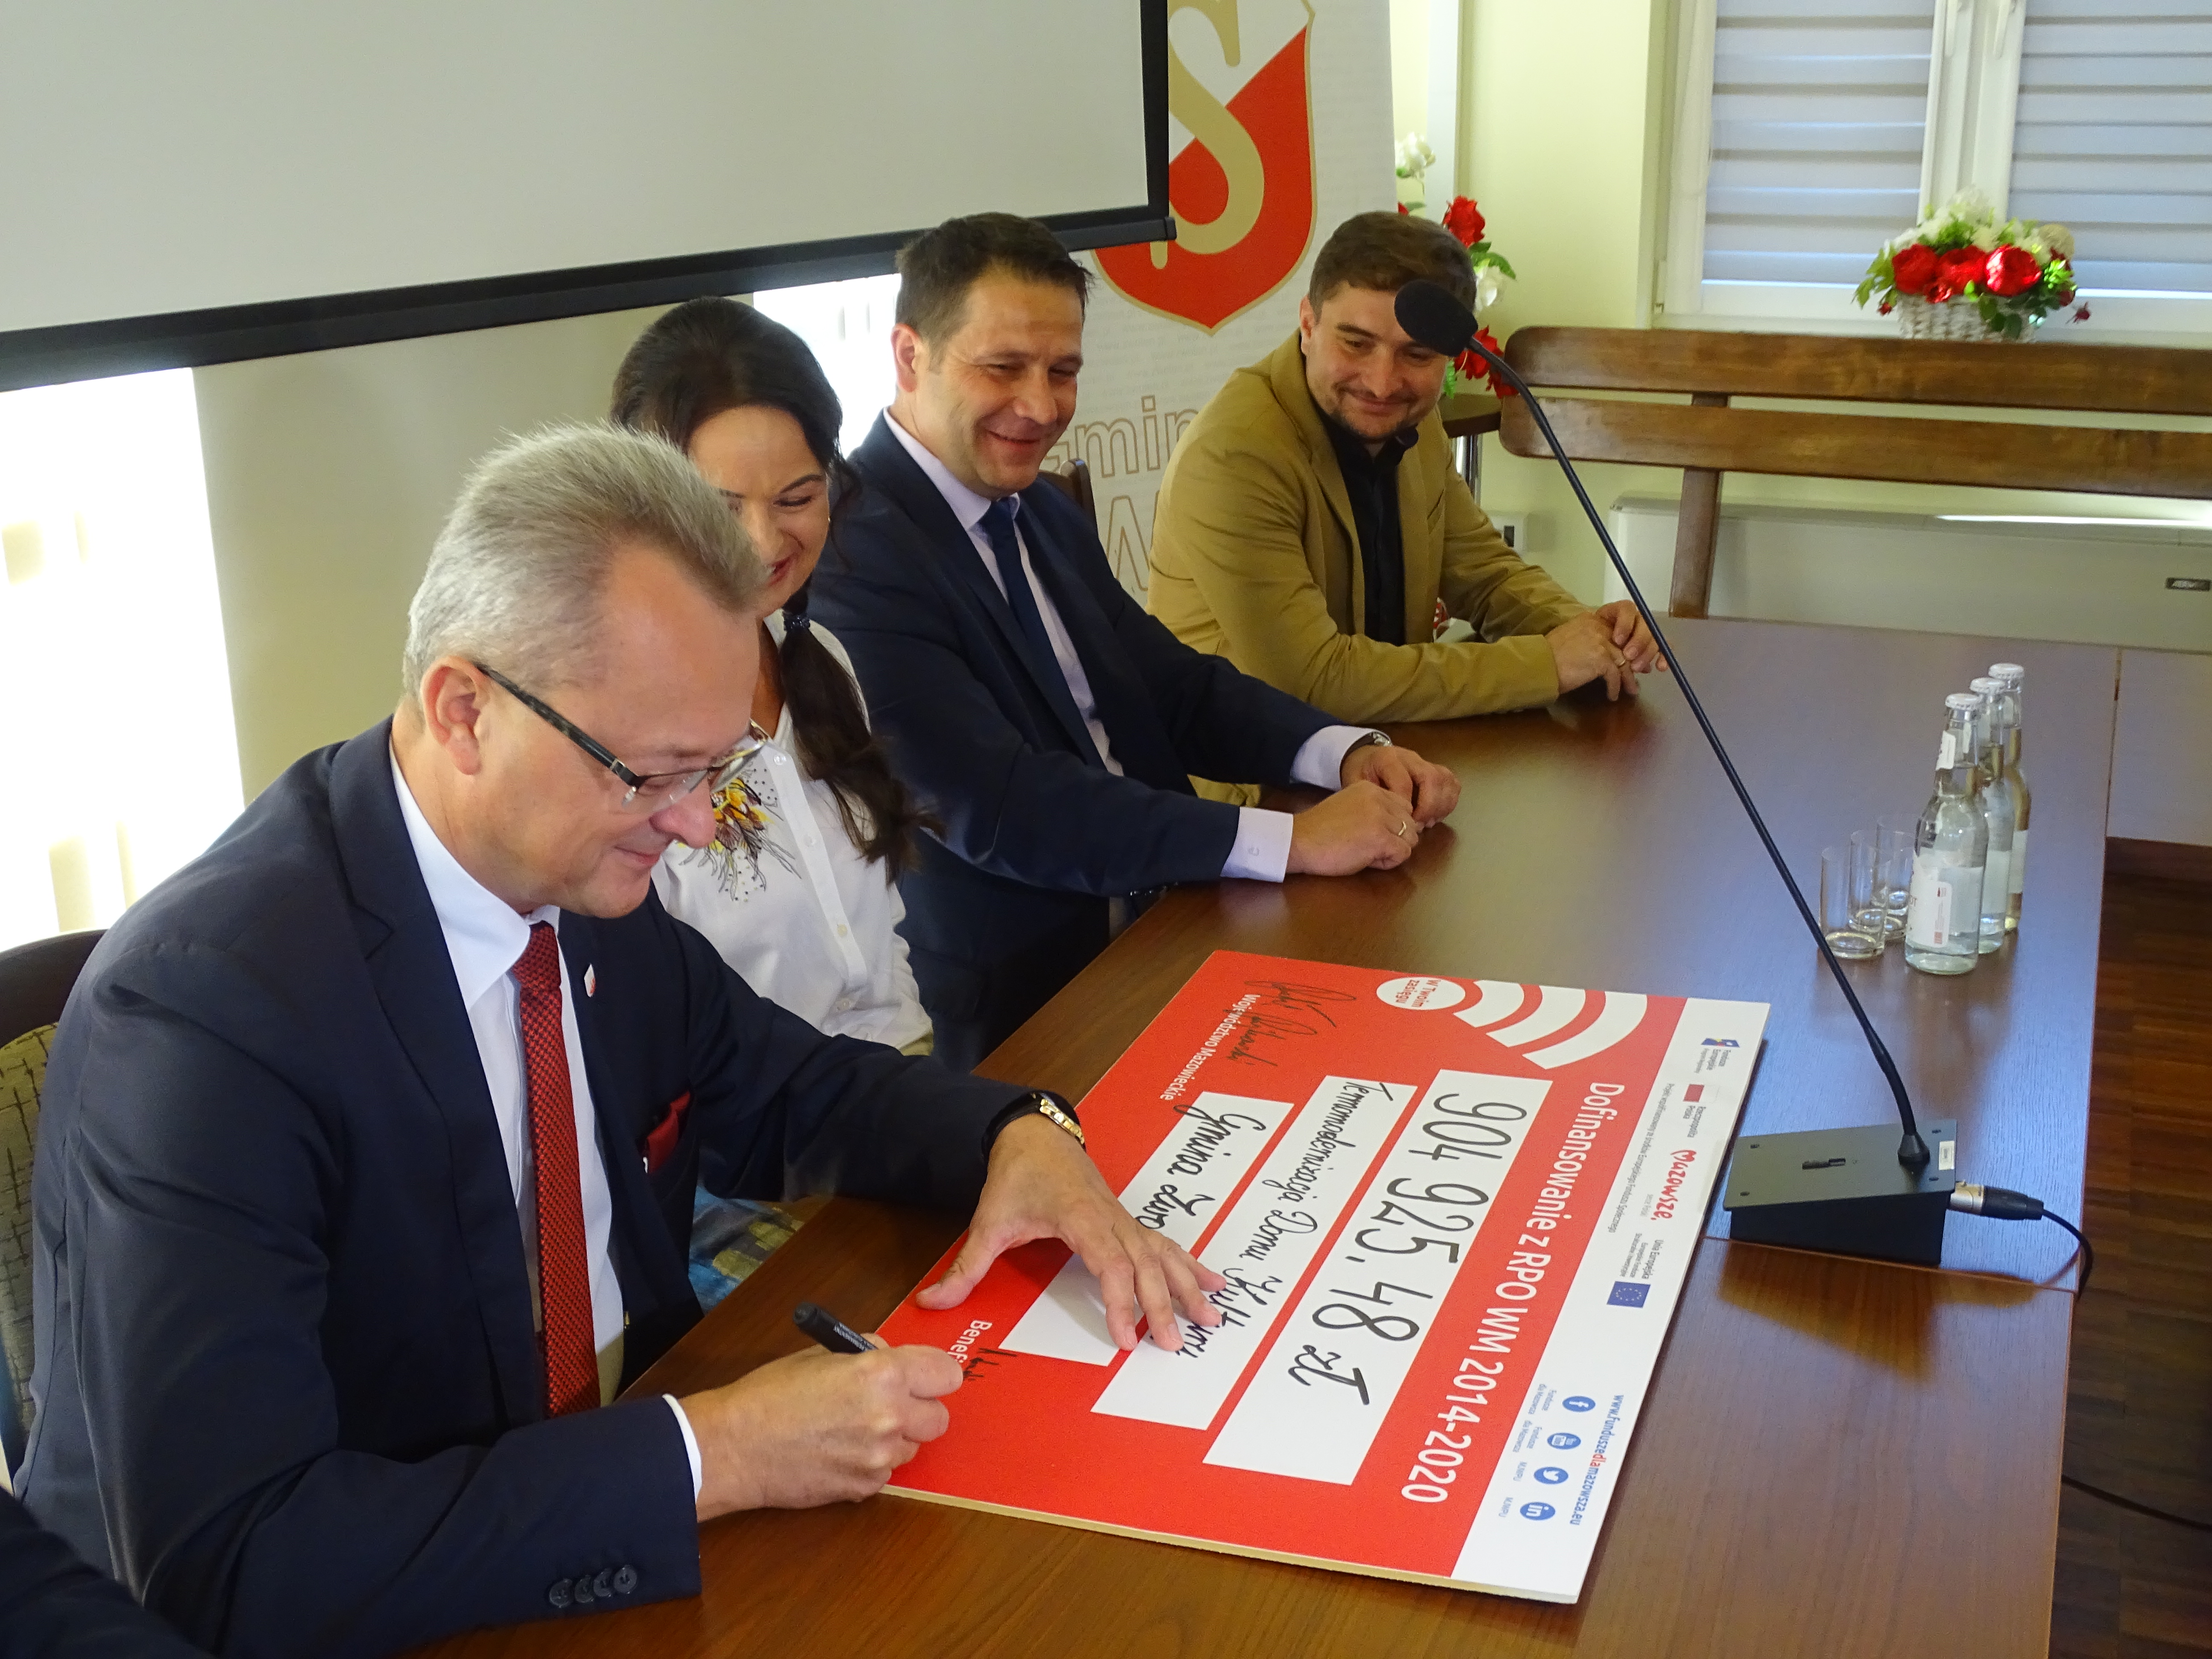 Burmistrz Zwolenia Arkadiusz Sulima podpisał także symboliczny czek na realizację zadania.